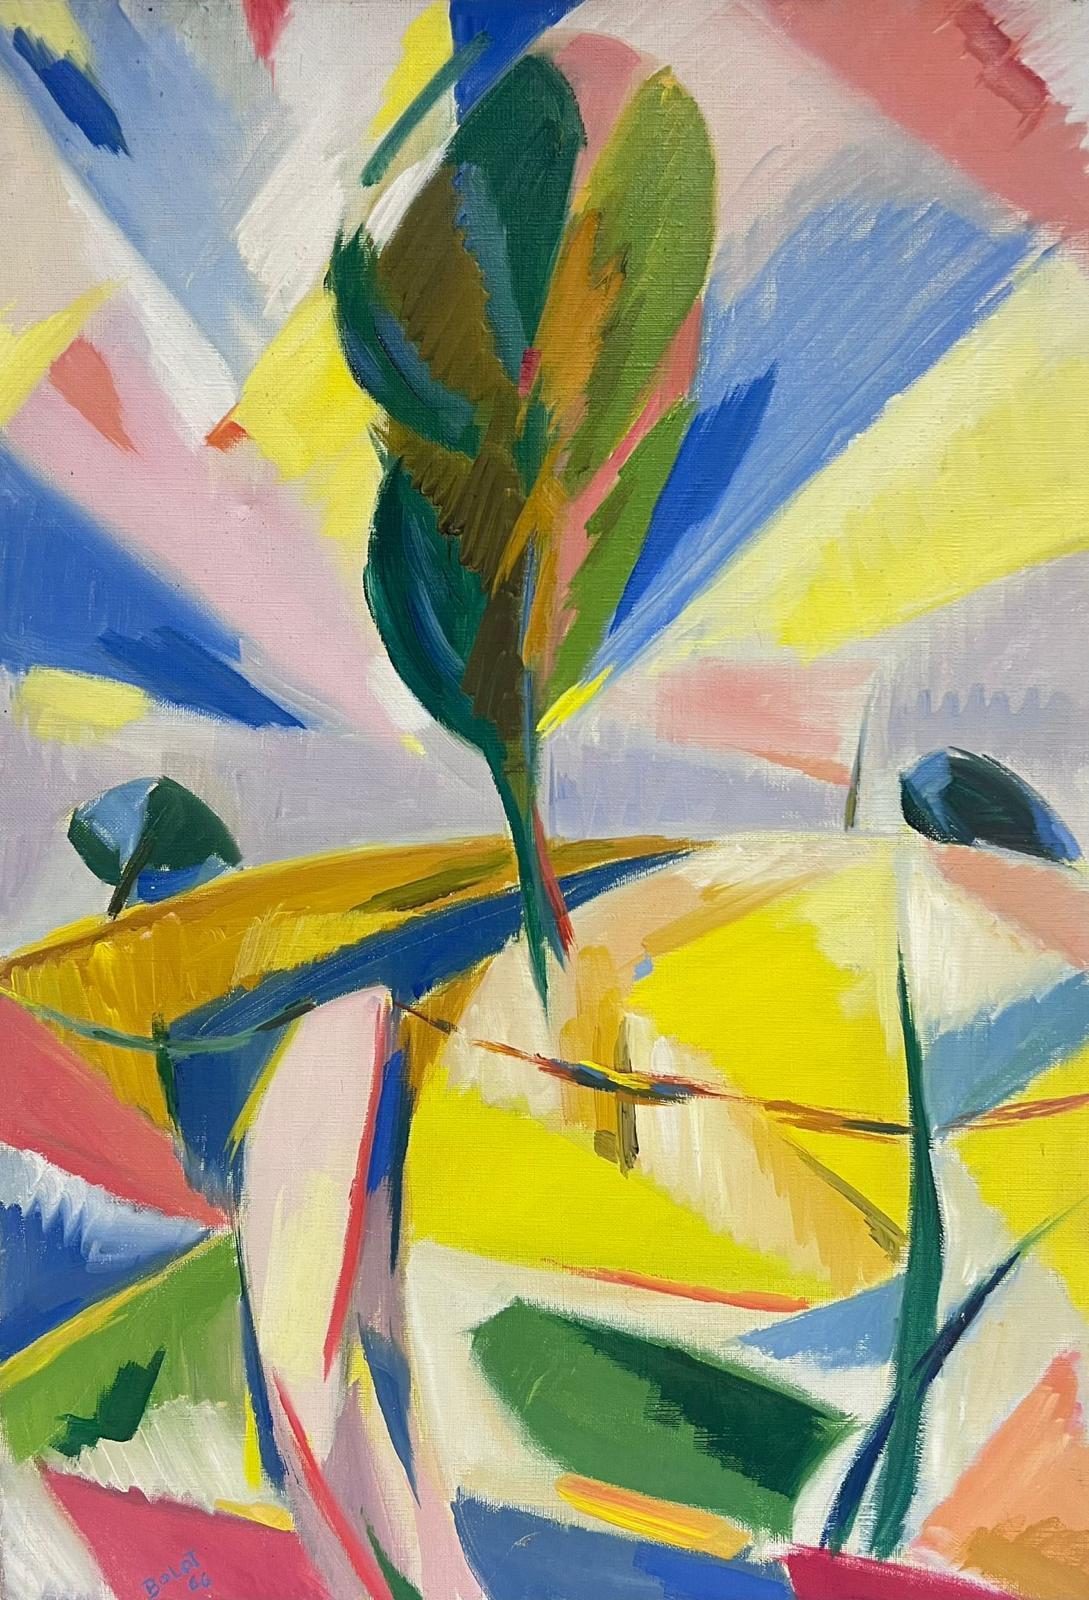 Paul-Louis Bolot (French 1918-2003) Landscape Painting - 1960's French Cubist Oil Painting Bright Landscape with Tree Amazing Colors